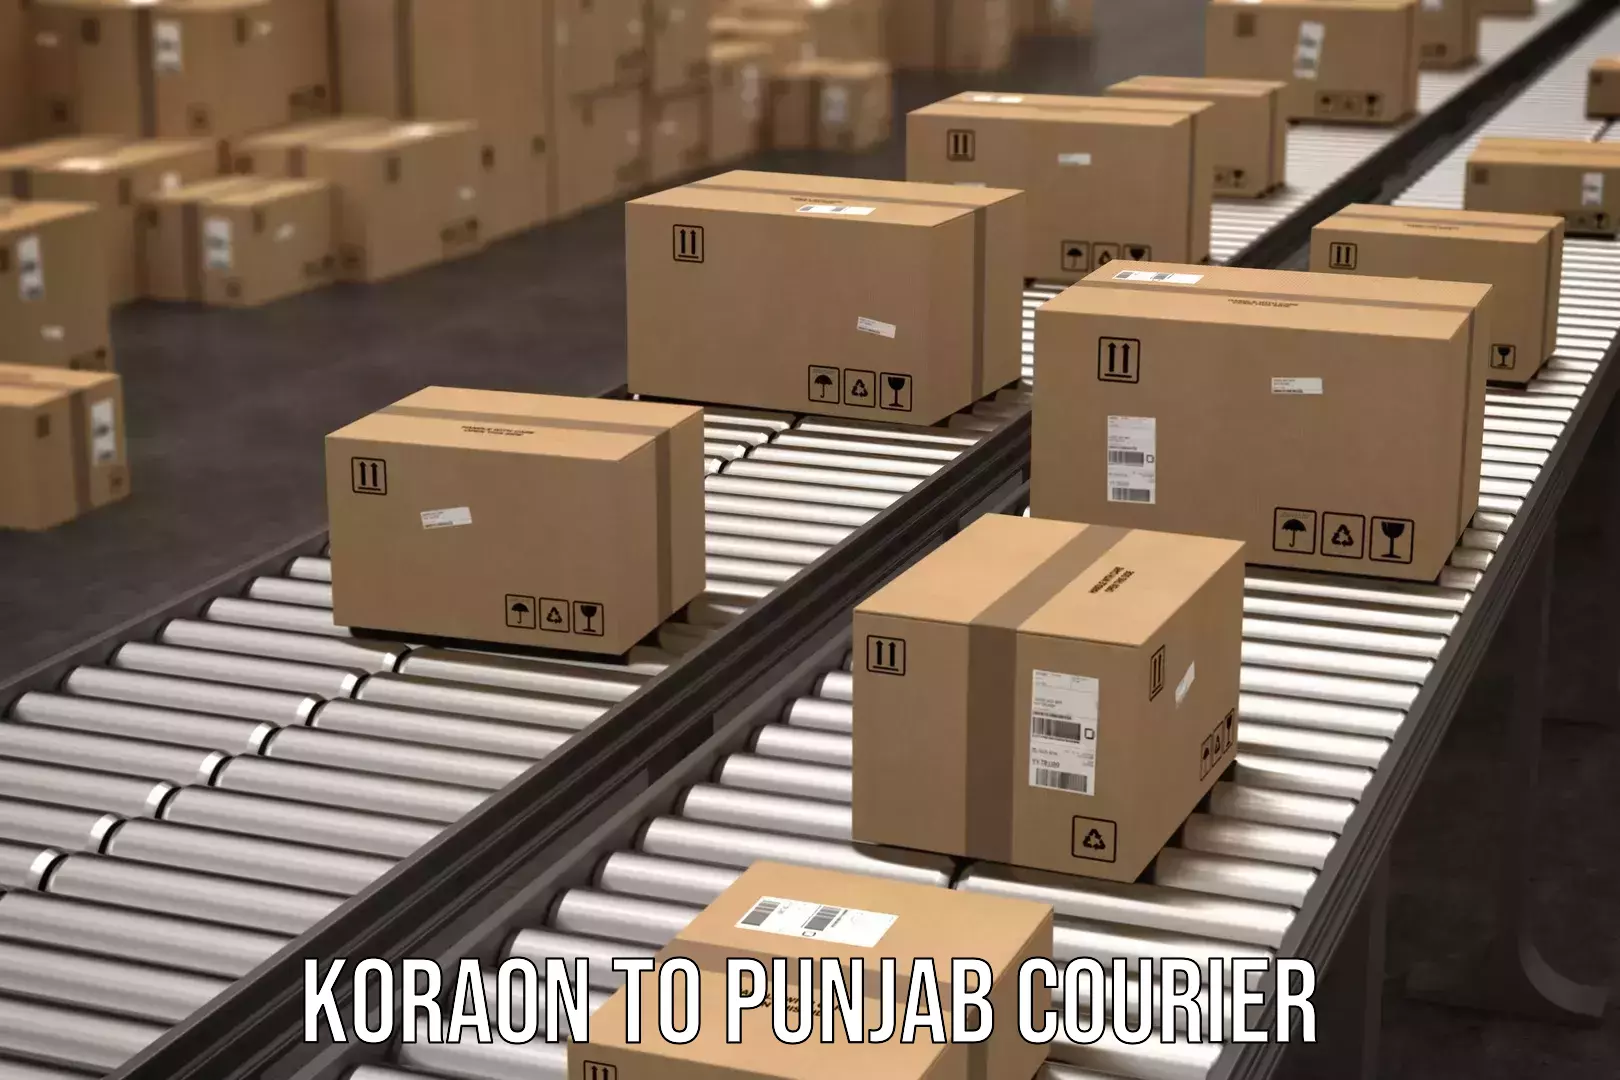 Professional courier handling Koraon to Punjab